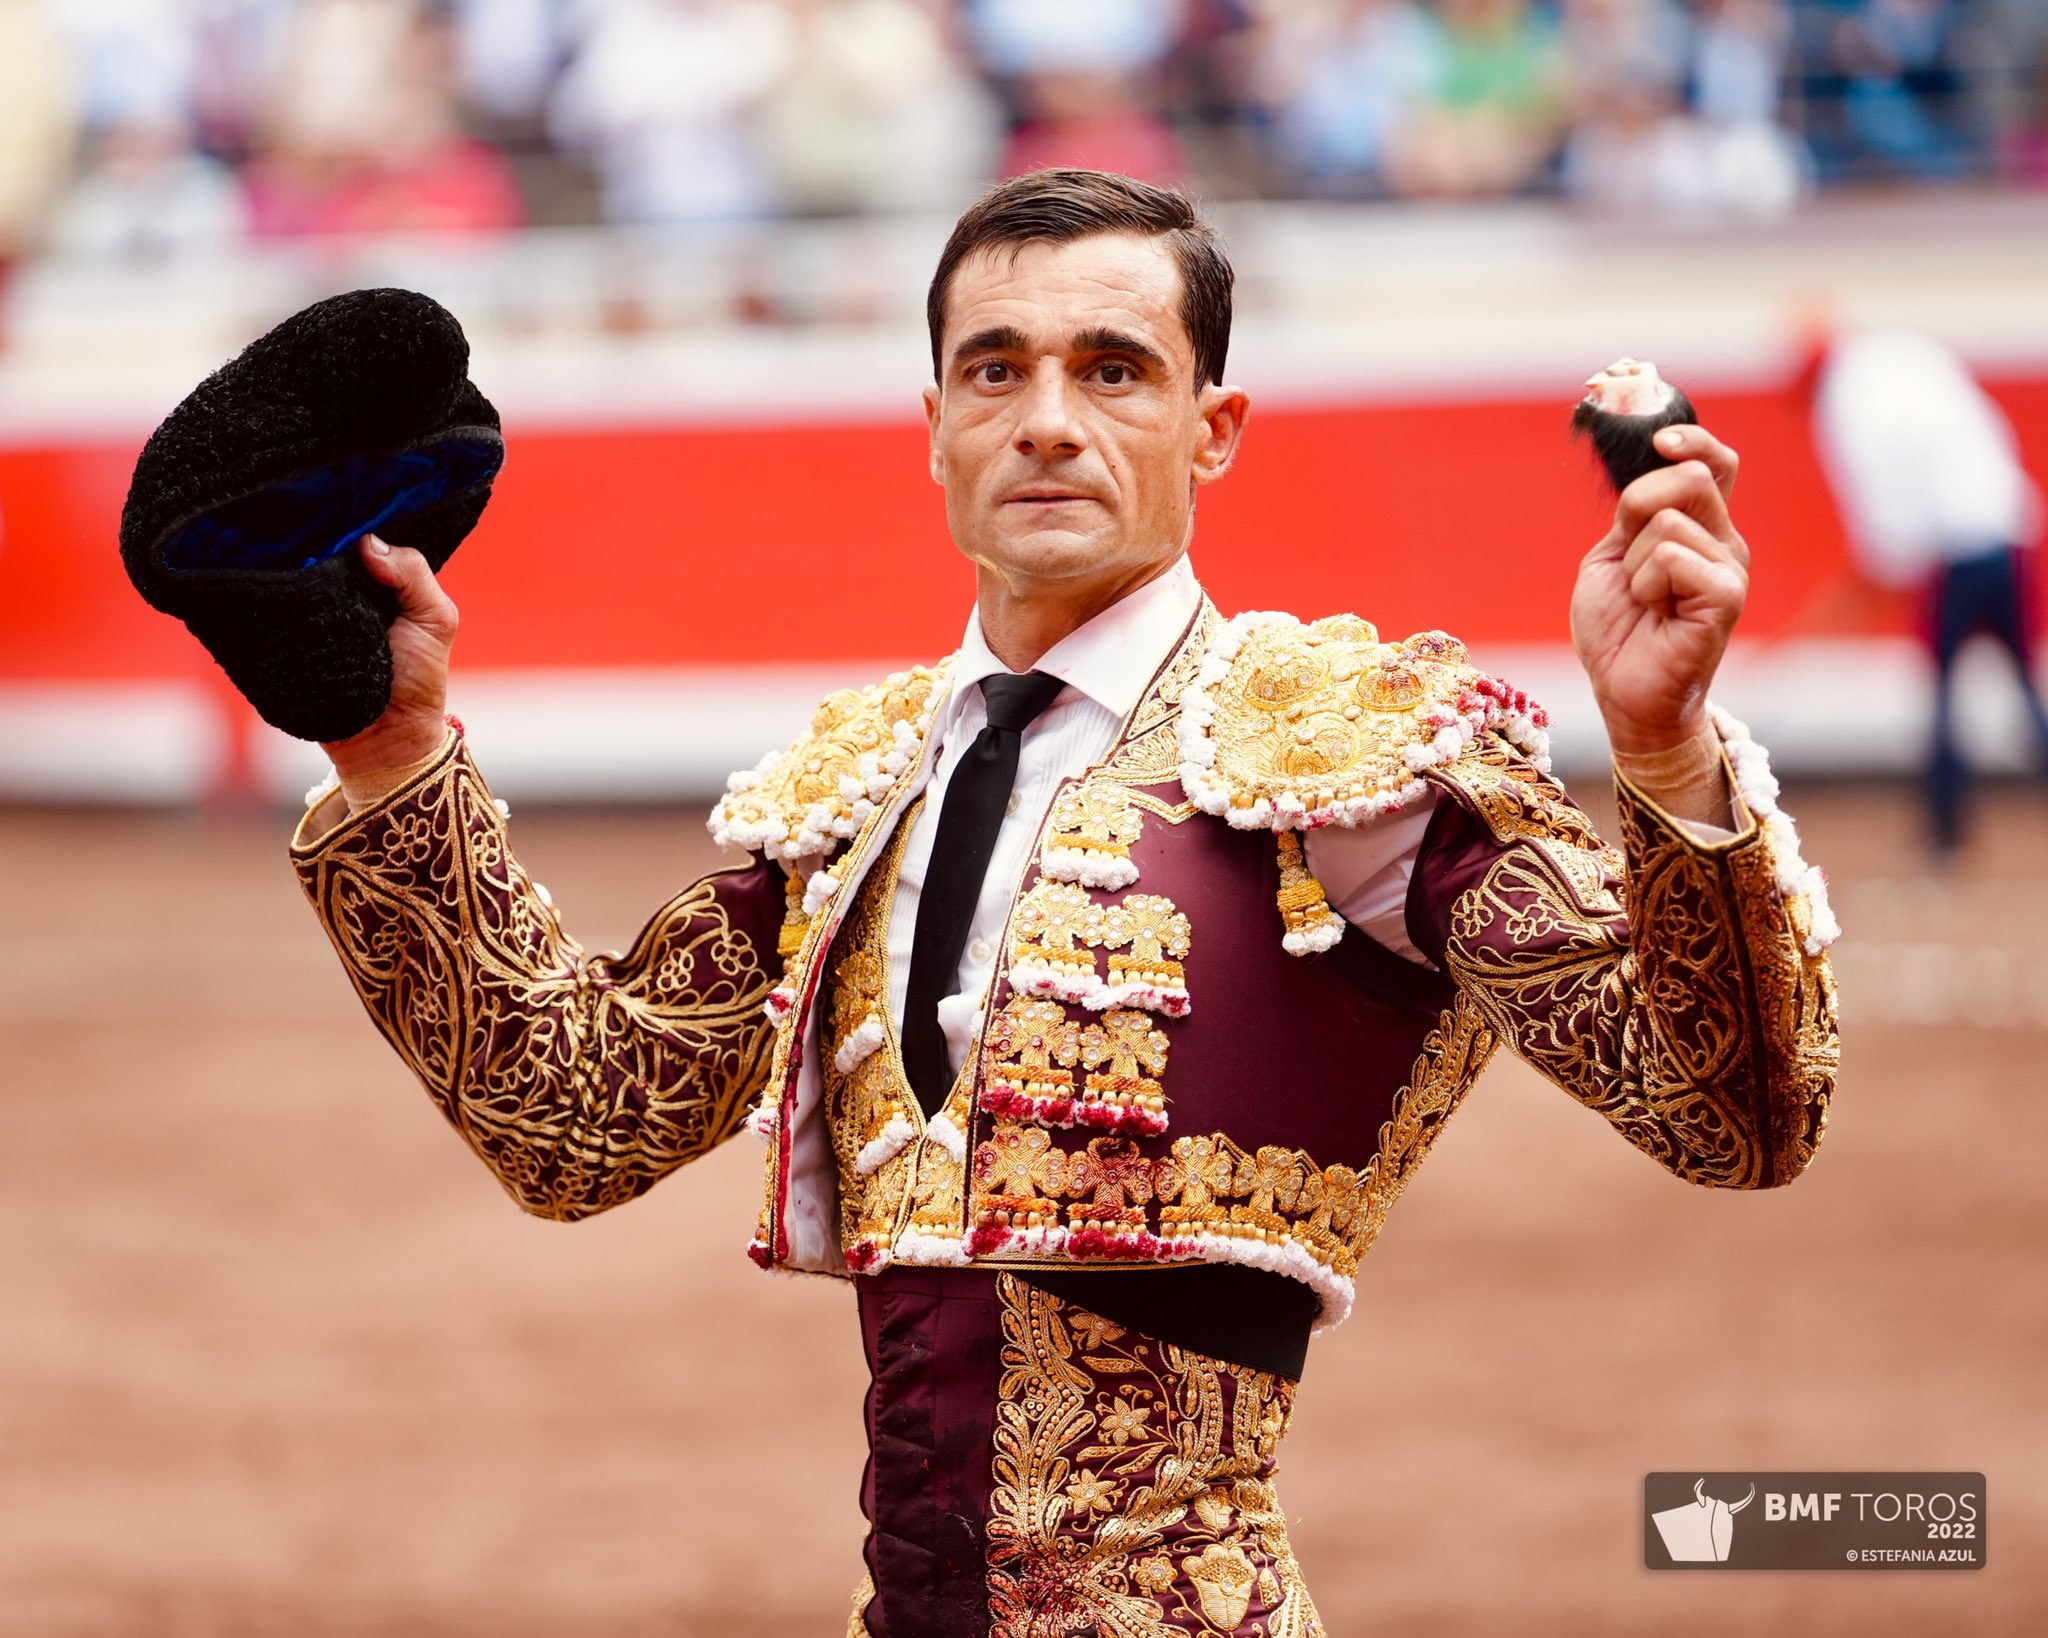 Paco Ureña estará en Bilbao para promocionar las Corridas Generales